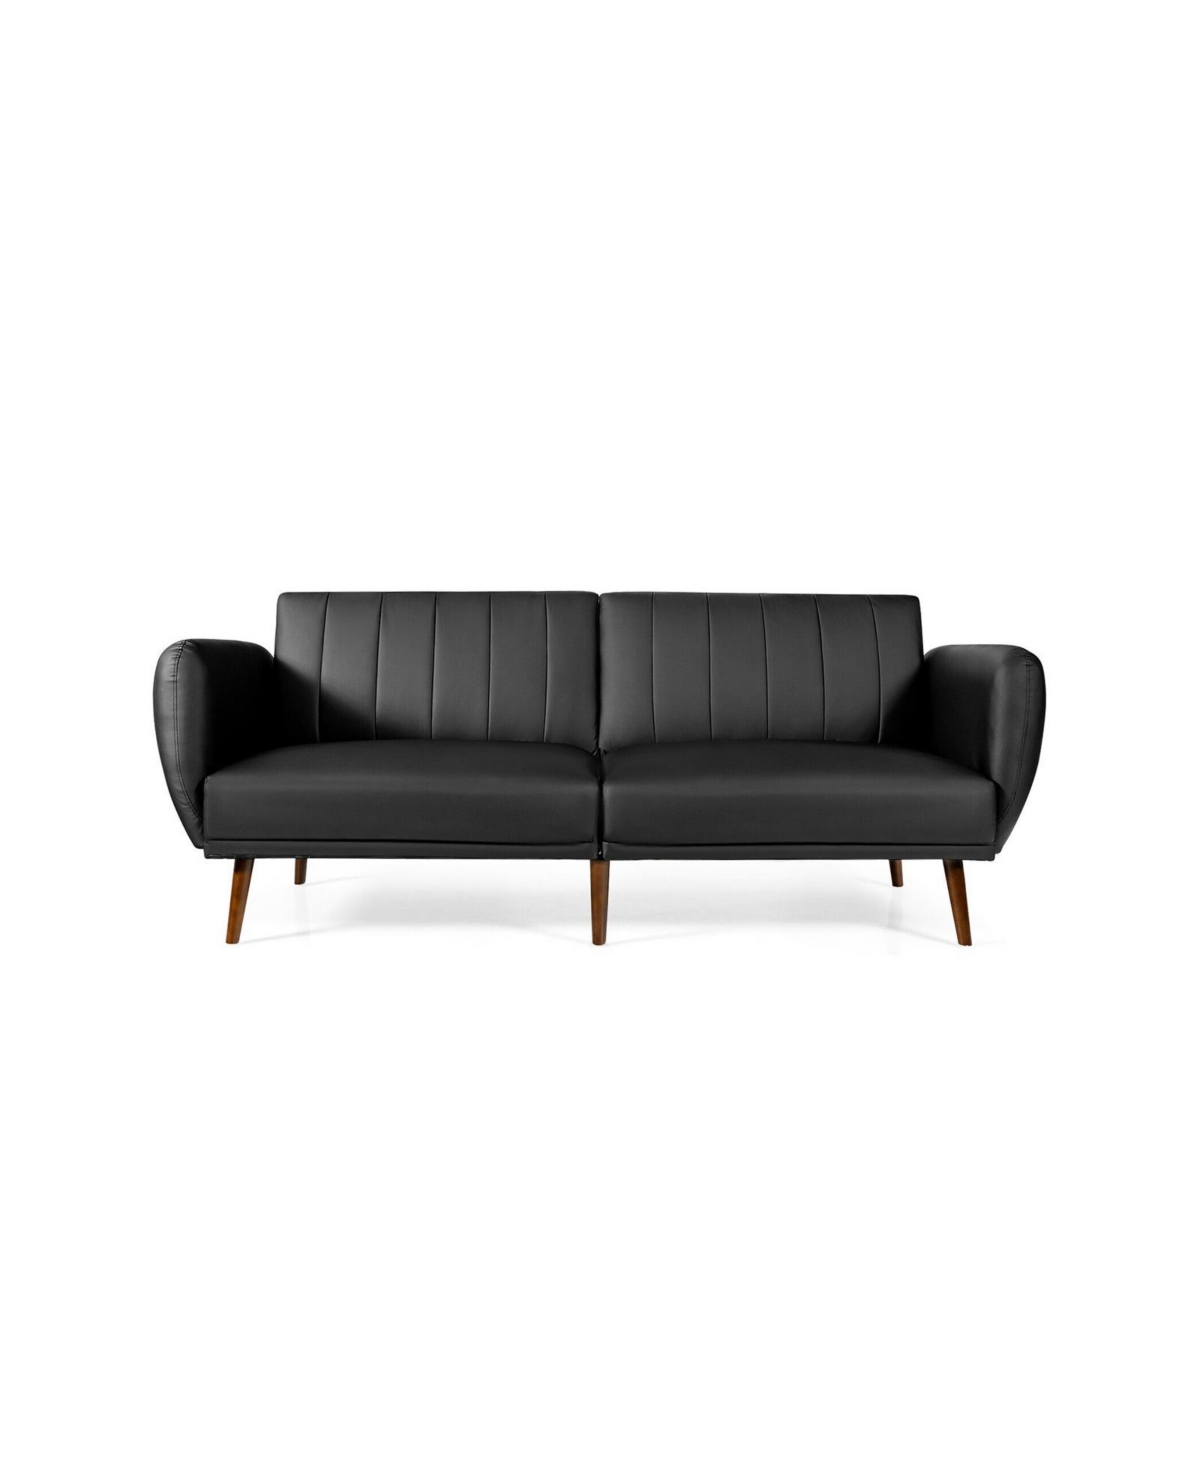 Shop Slickblue 3 Seat Convertible Sofa Bed With Adjustable Backrest For Living Room-black